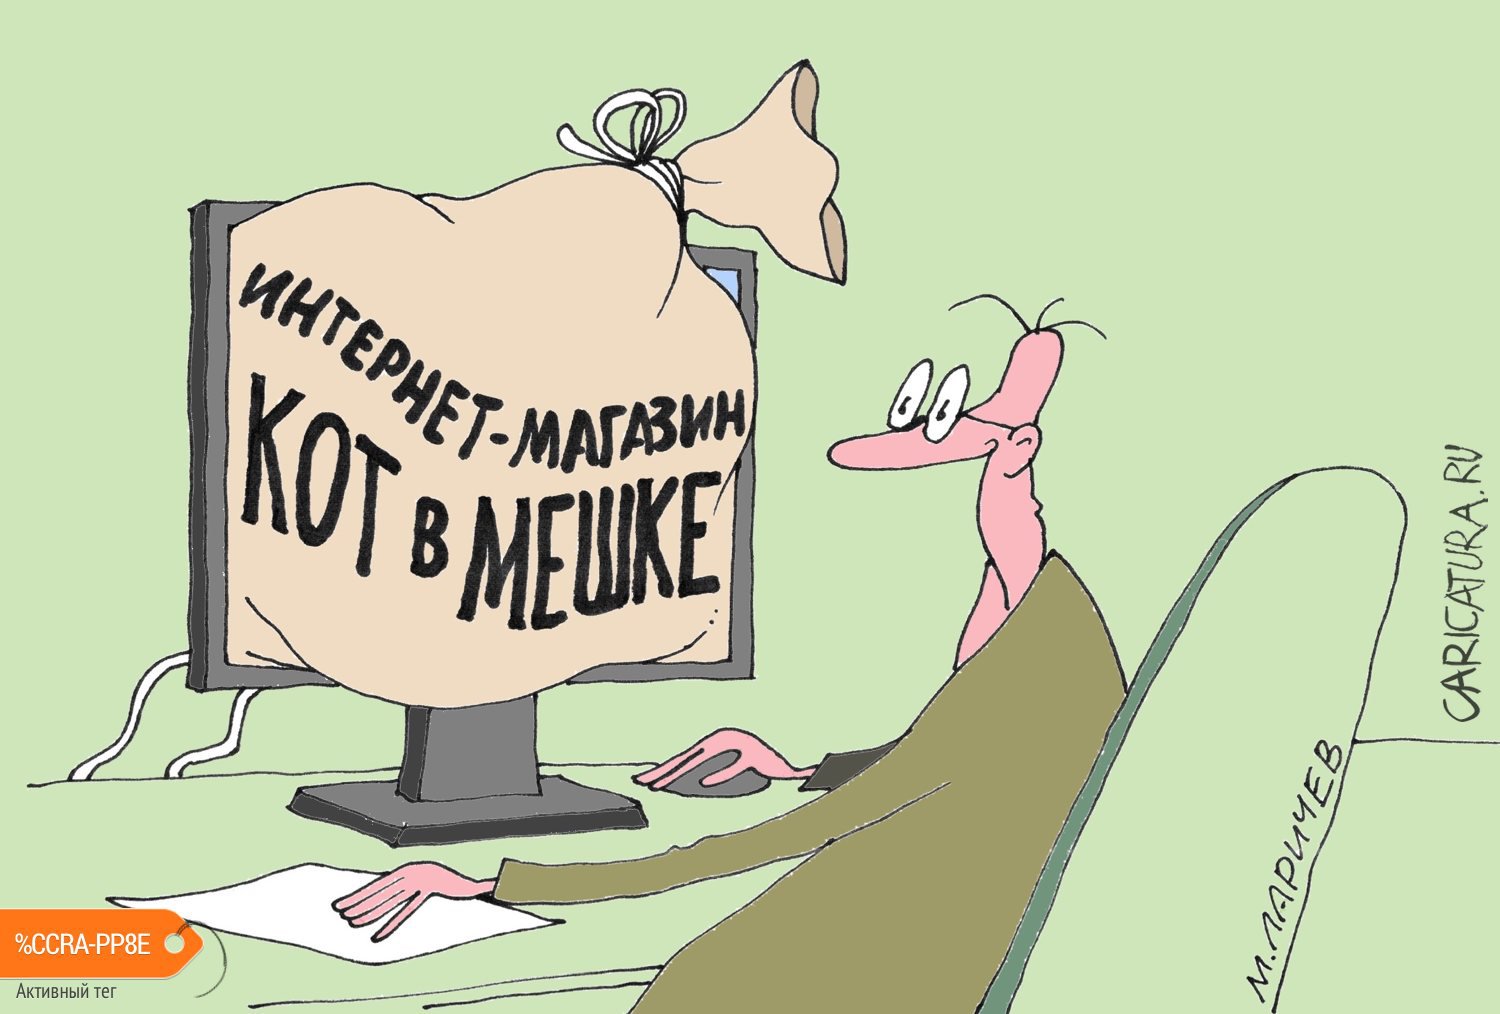 Карикатура "Продай-купи", Михаил Ларичев